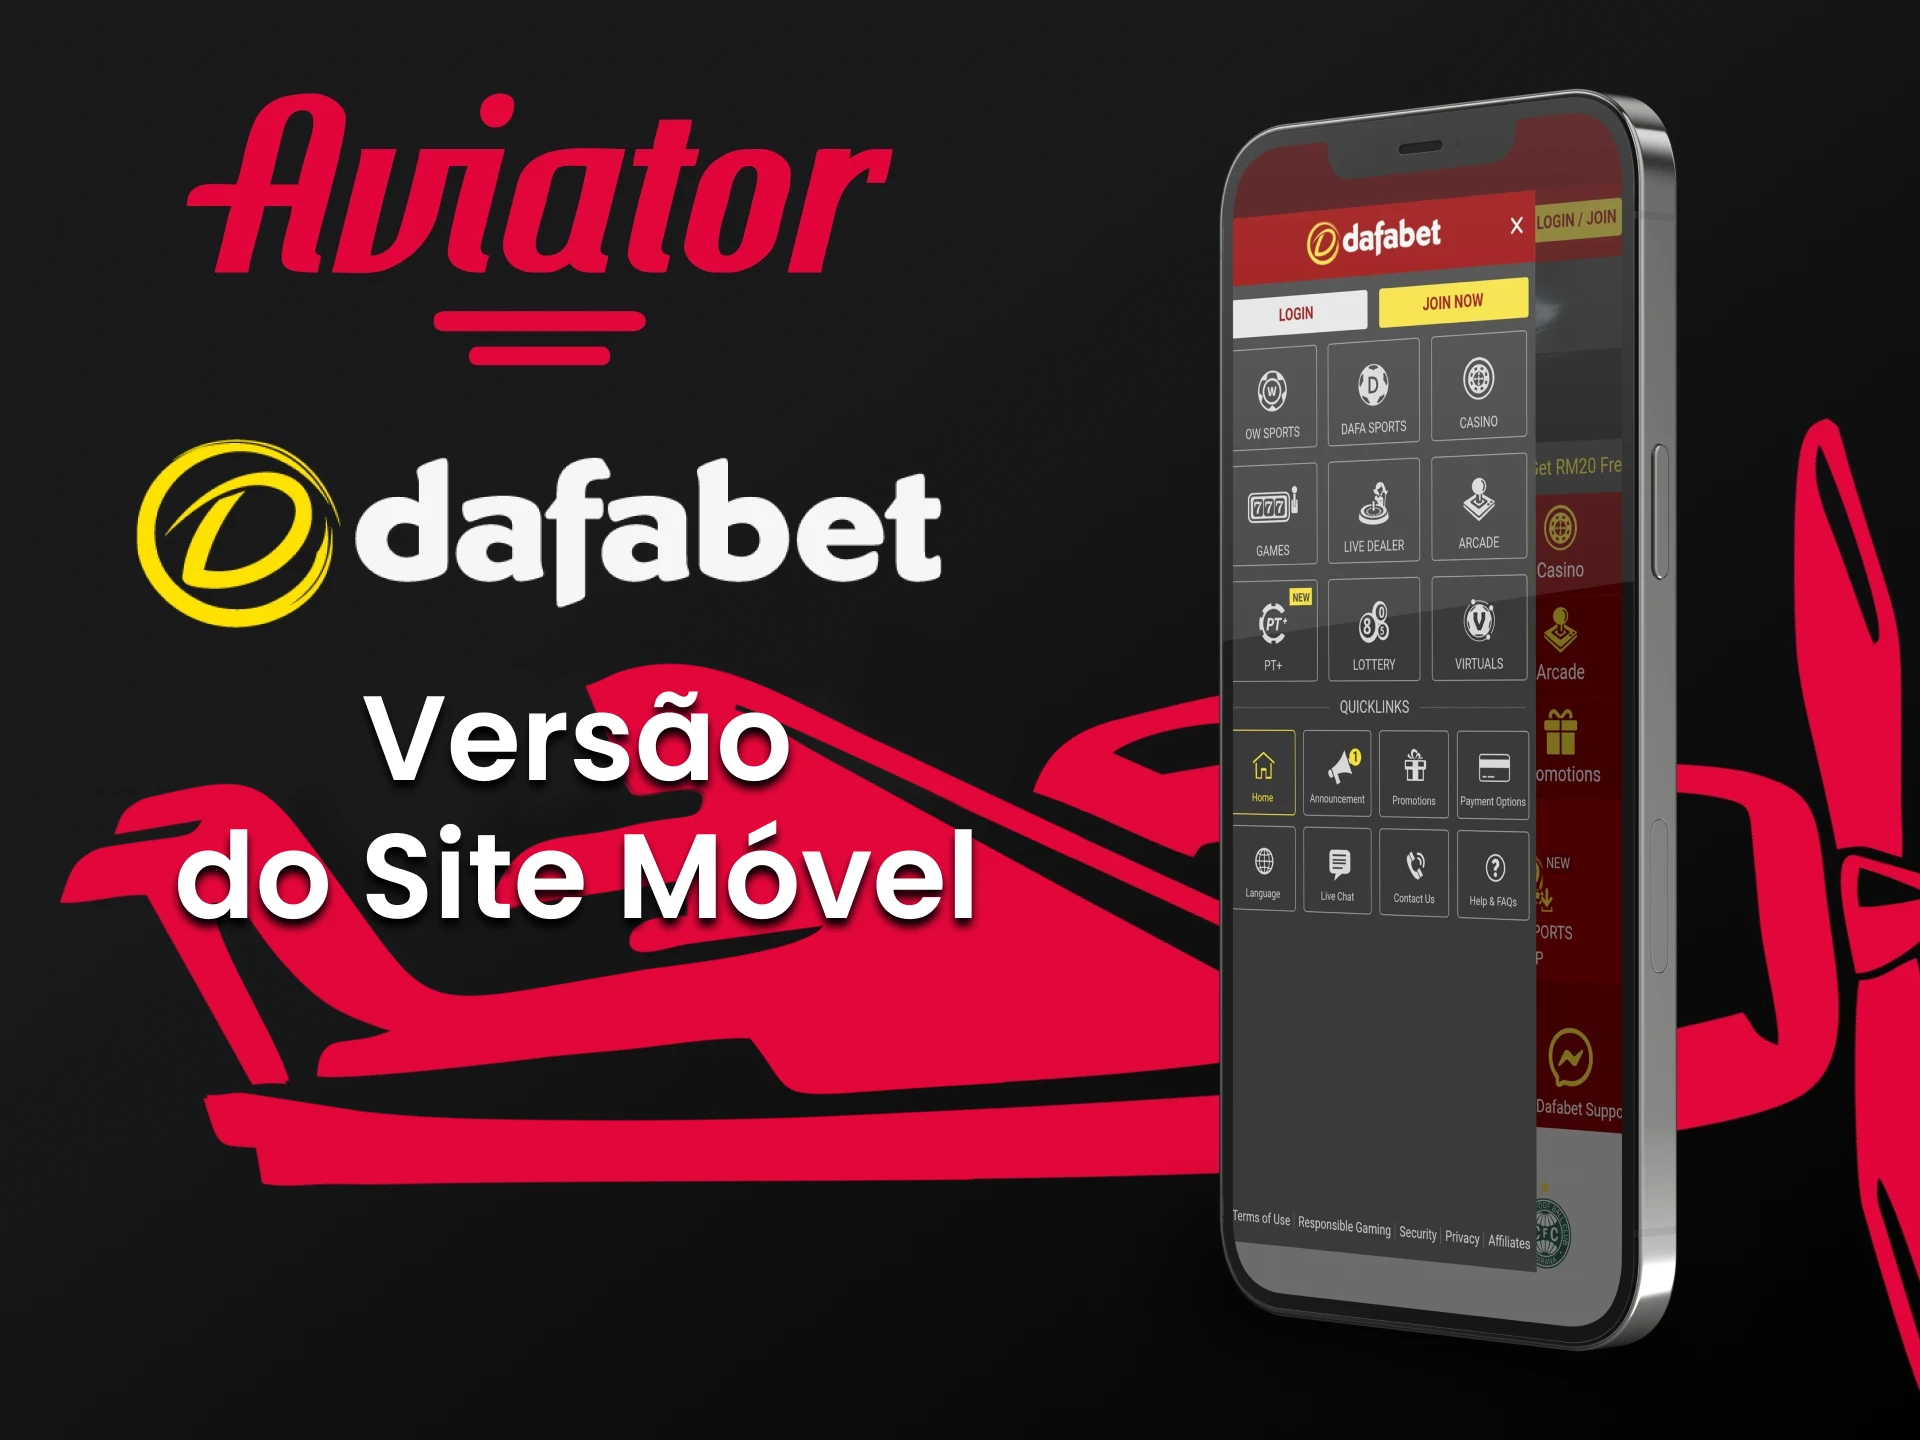 Usando um smartphone, você também pode jogar Aviator na Dafabet.